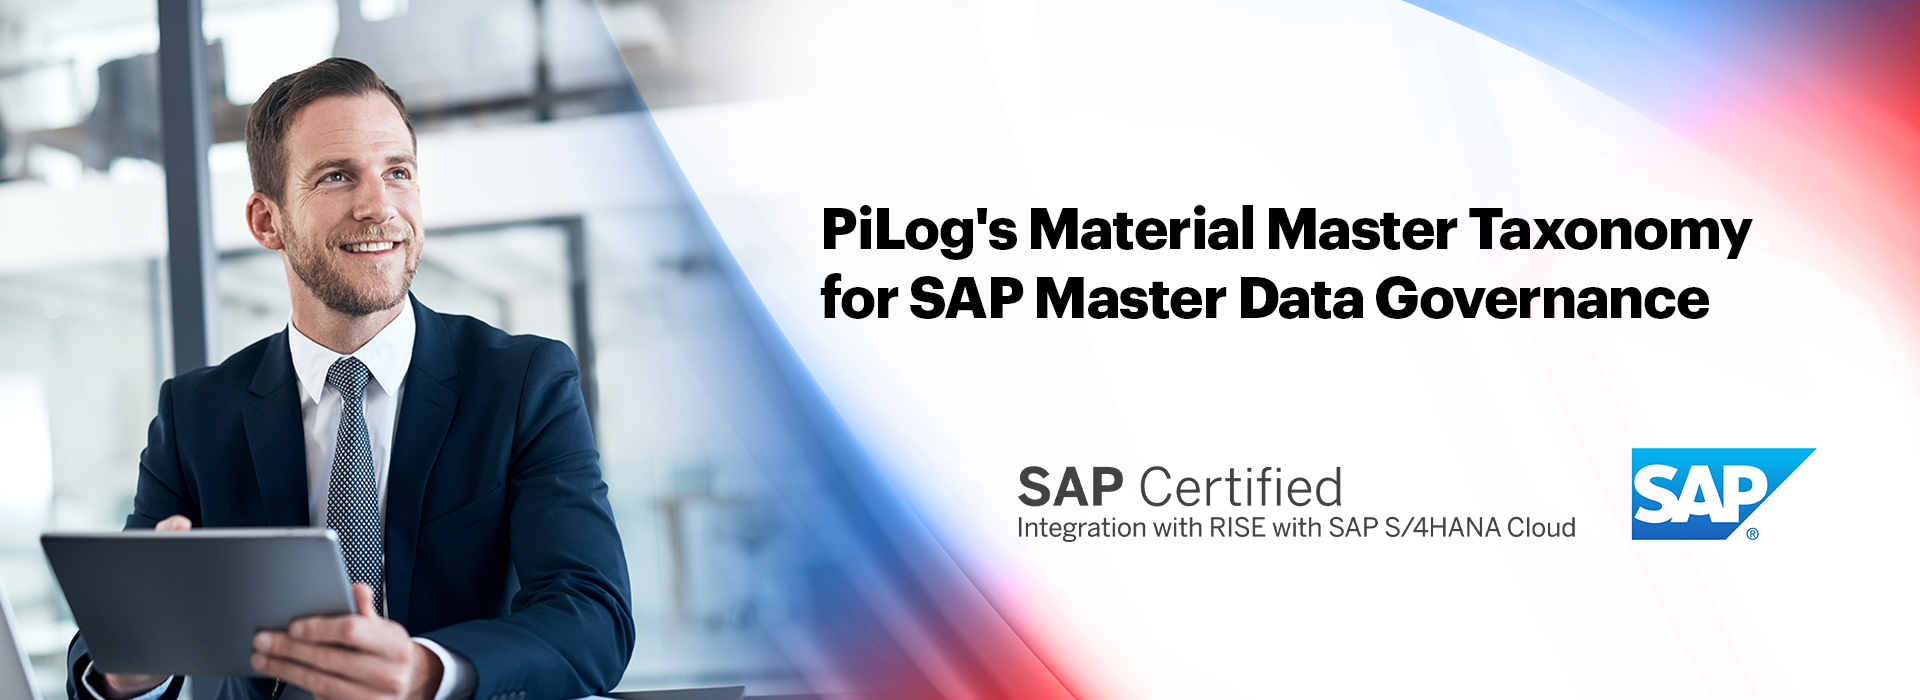 PiLogs Material Master Taxonomy for SAP Master Data Governance